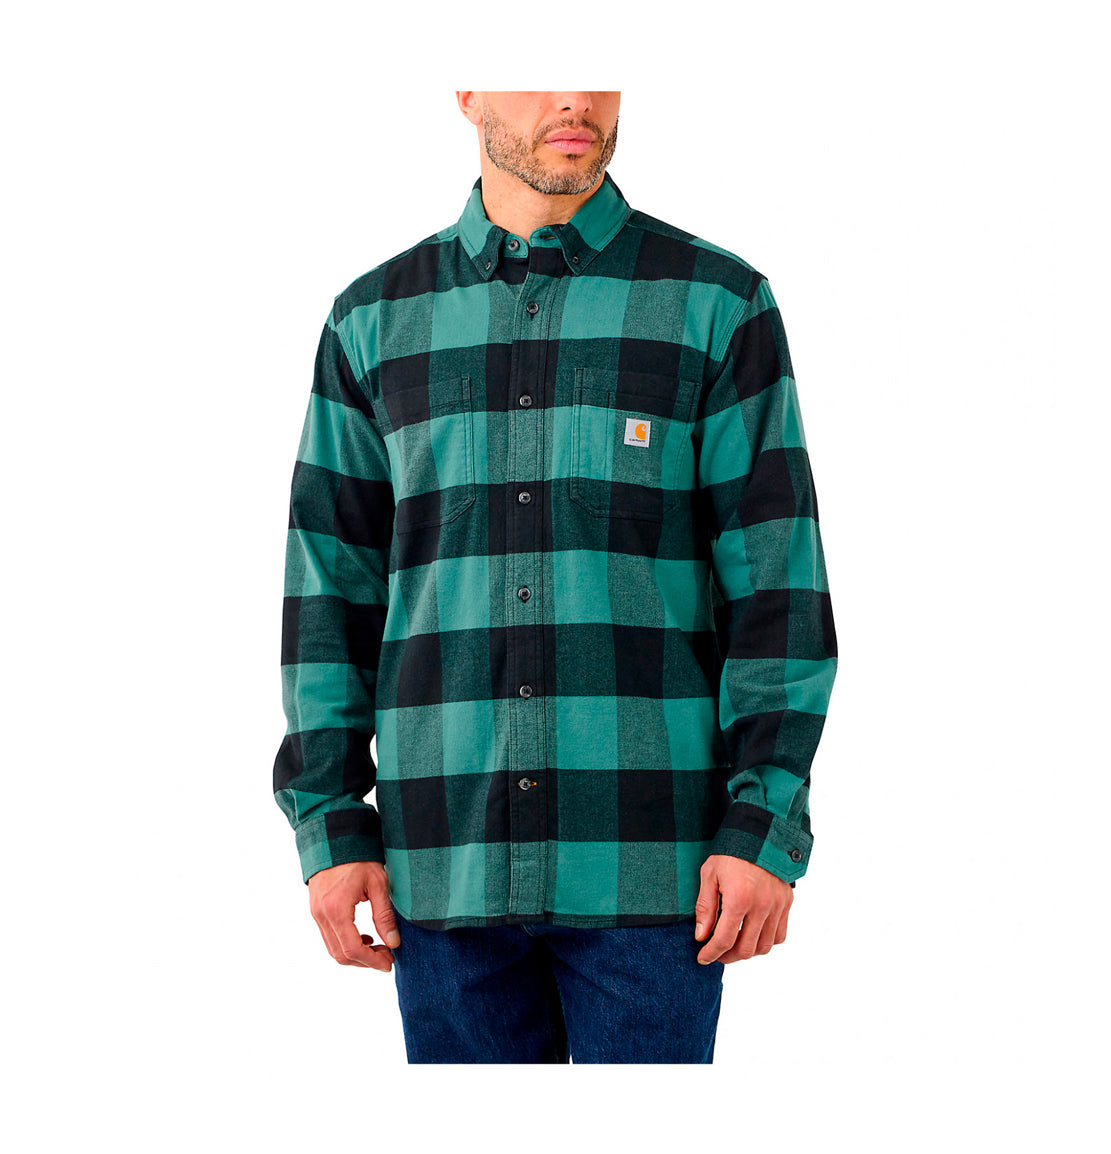 Carhartt green flannel shirt